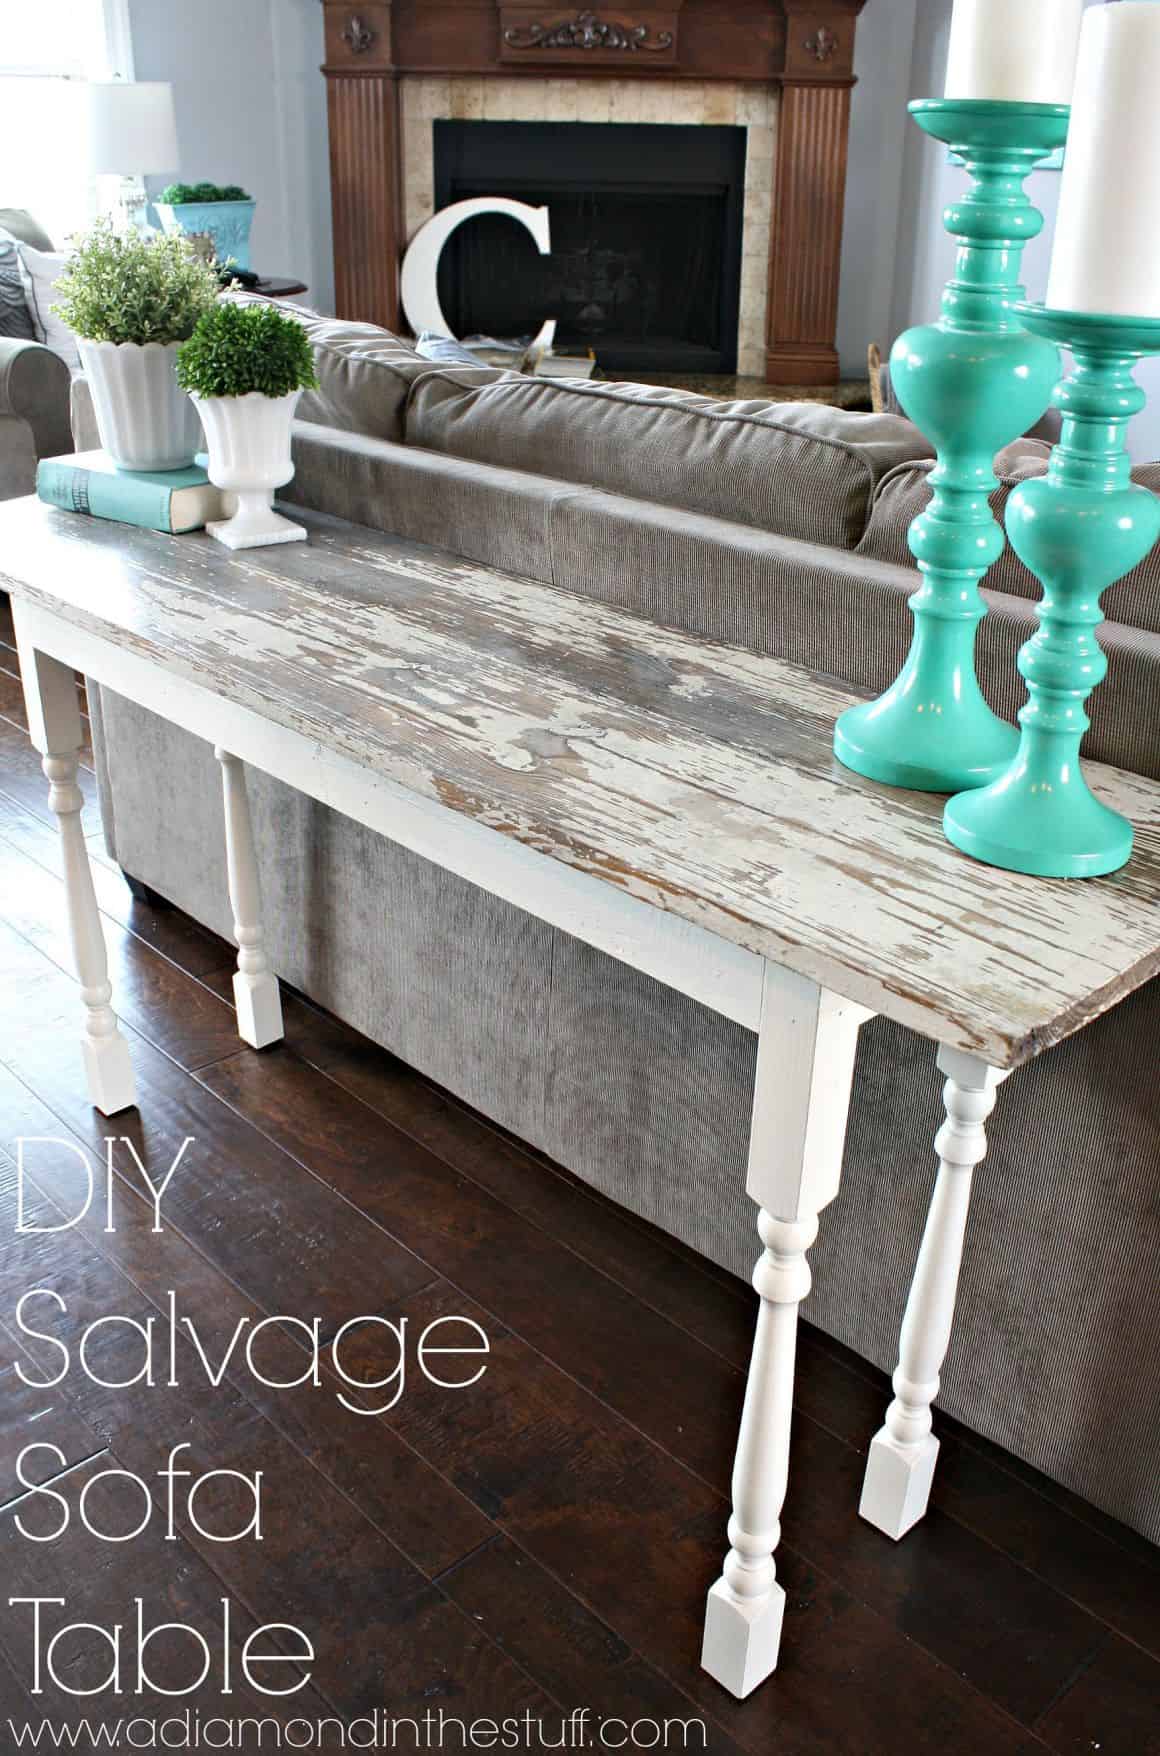 Diy salvage sofa table